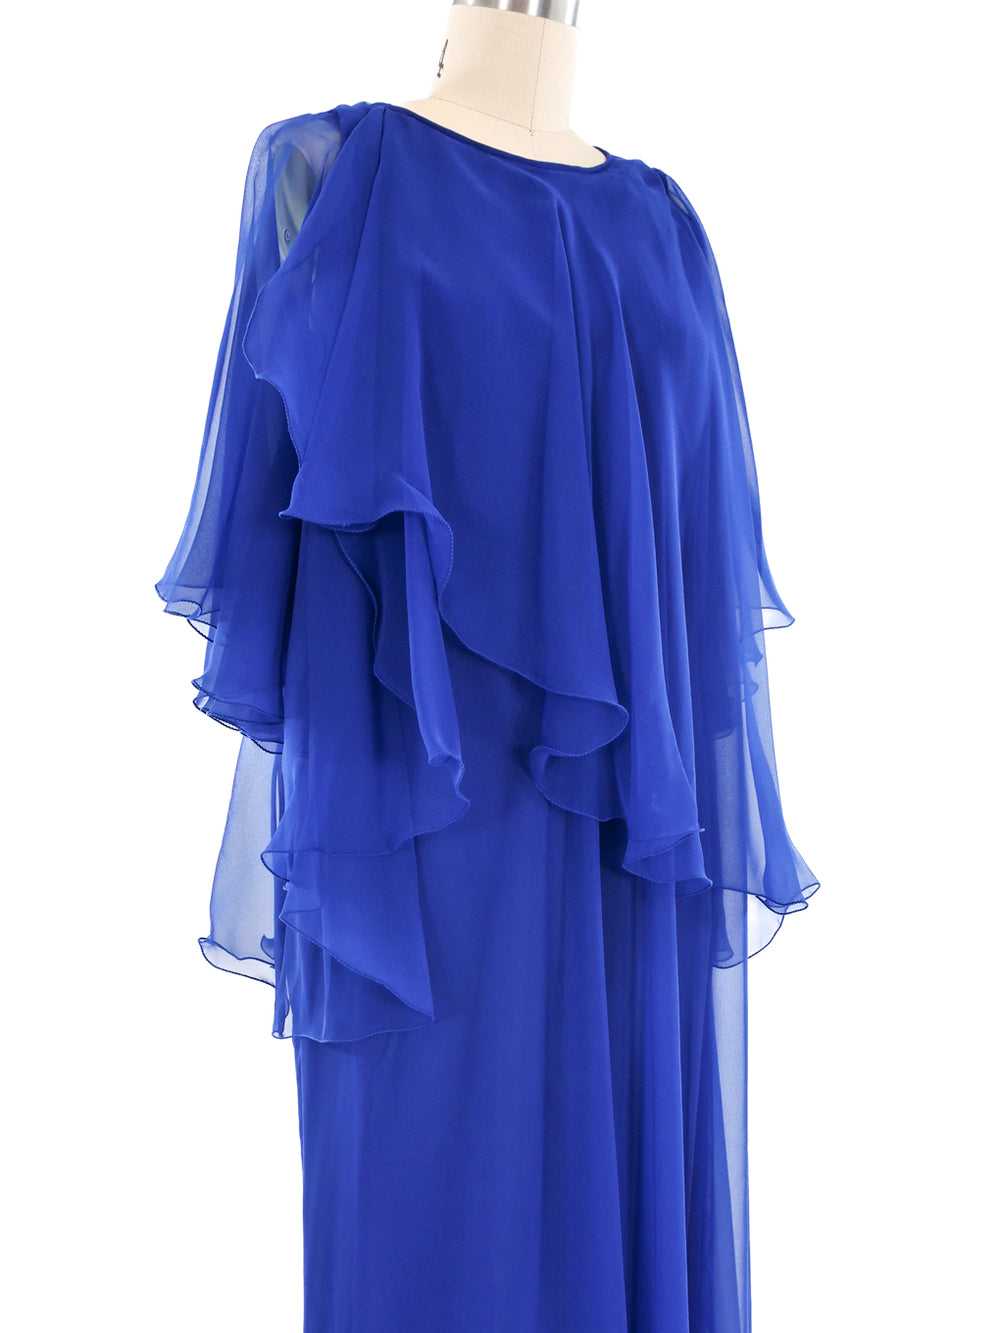 Jean Varon Ruffled Maxi Dress - image 2